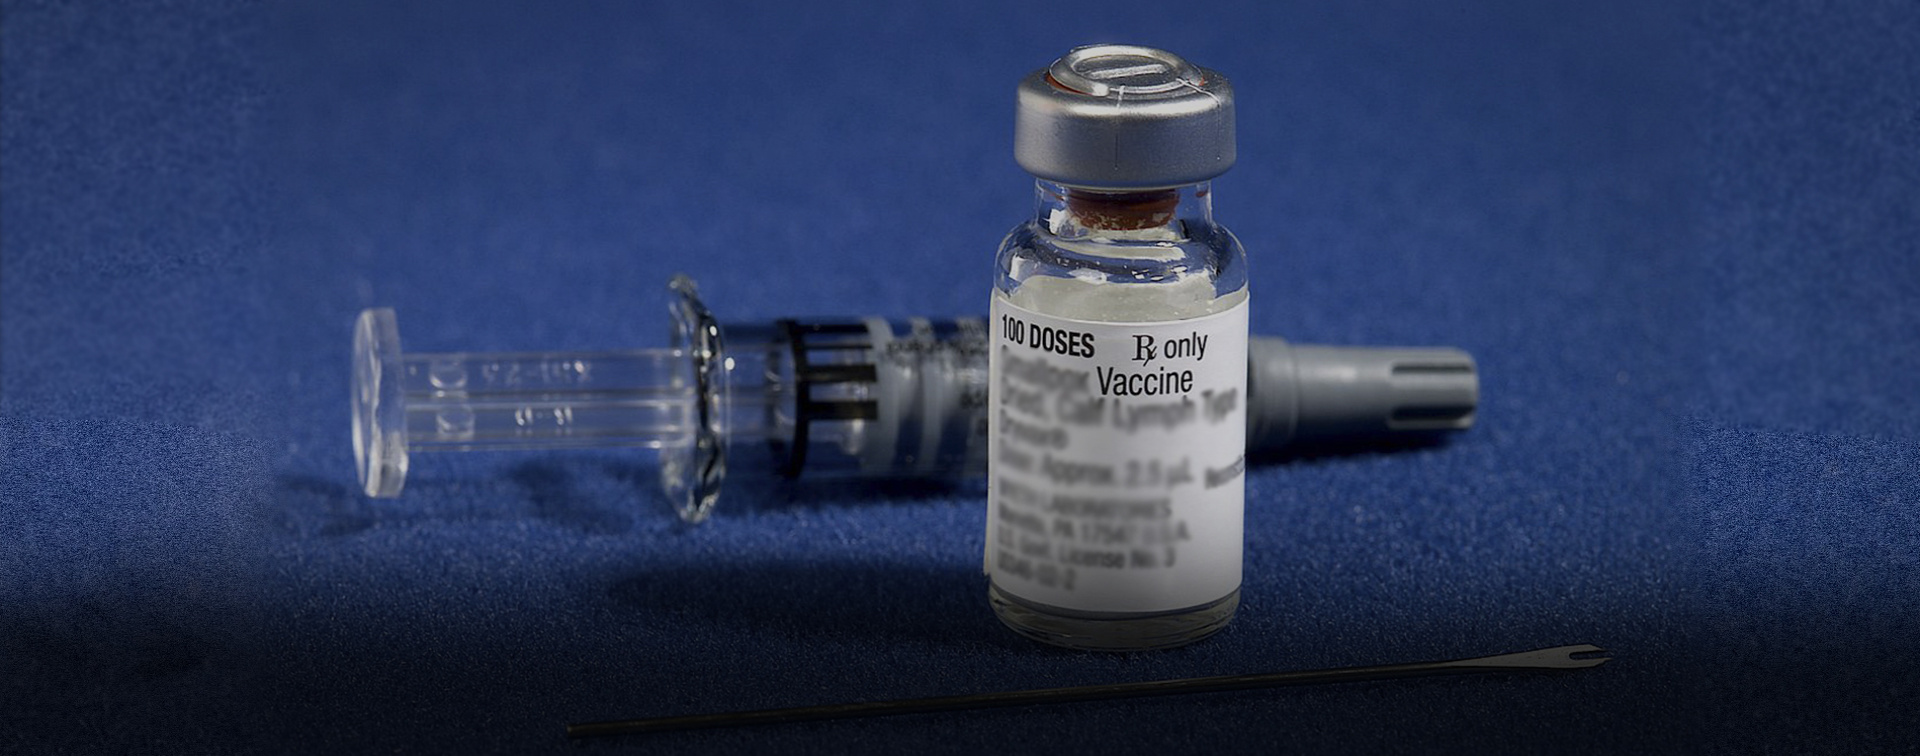 Вакцина упаковка. Лайт вакцина от коронавируса. Спутник Лайт вакцина. Ампула вакцины Спутник Лайт. Covid 19 Спутник Лайт.